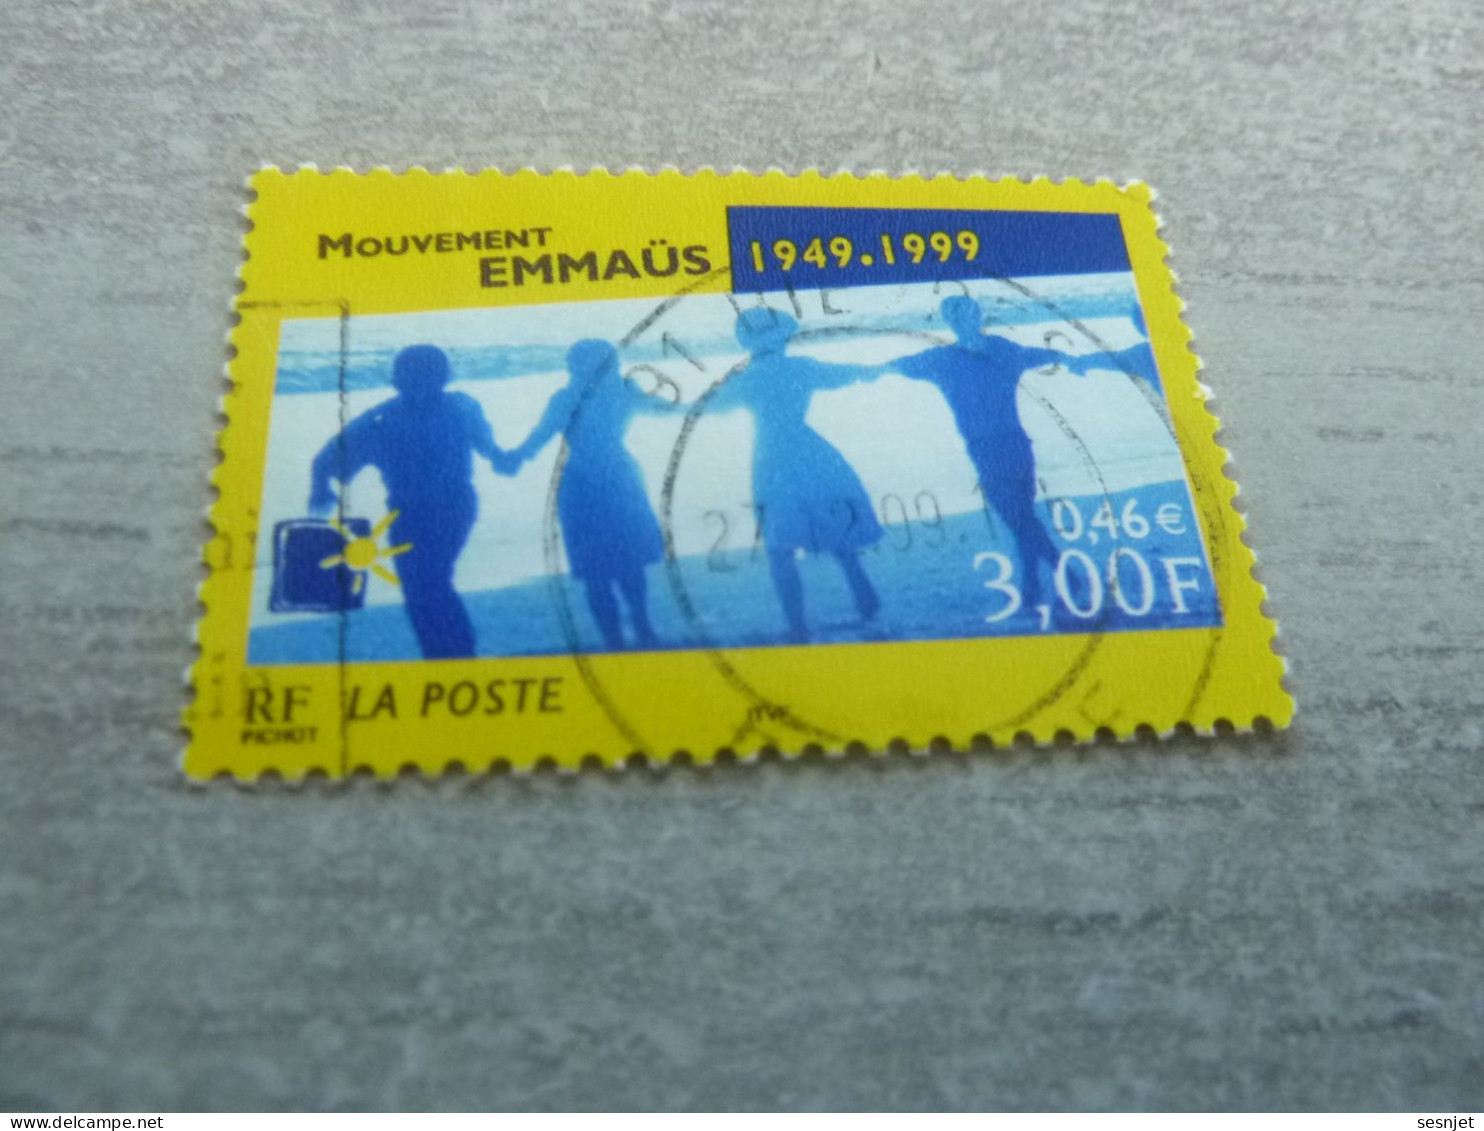 Cinquantenaire Du Mouvement Emmaüs - 3f. (0.46 €) - Yt 3282 - Multicolore - Oblitéré - Année 1999 - - Usati